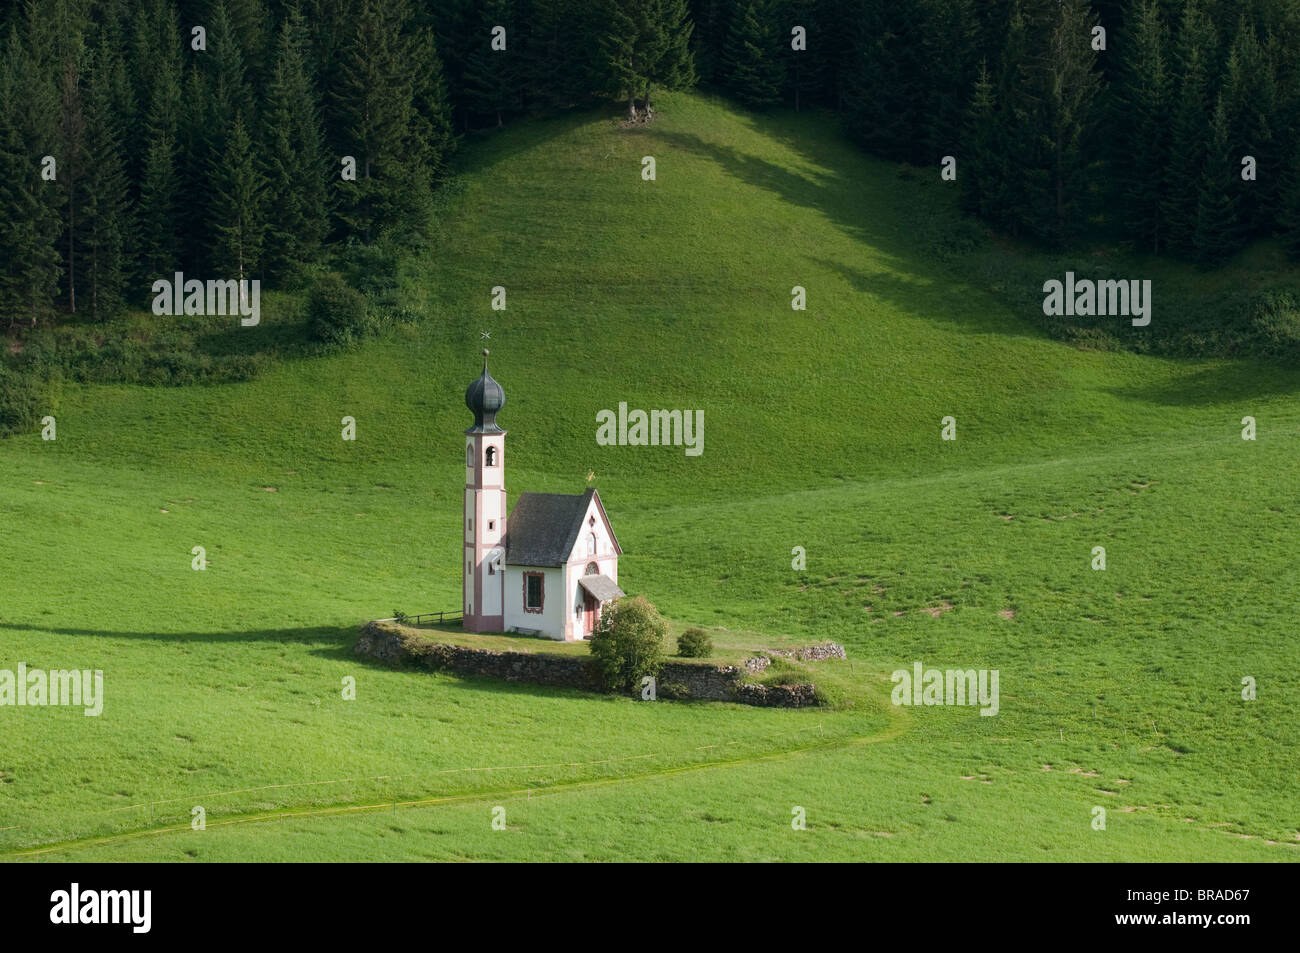 Église Saint Johann, Funes Valley (Villnoss), Dolomites, Trentin-Haut-Adige, le Tyrol du Sud, Italie, Europe Banque D'Images